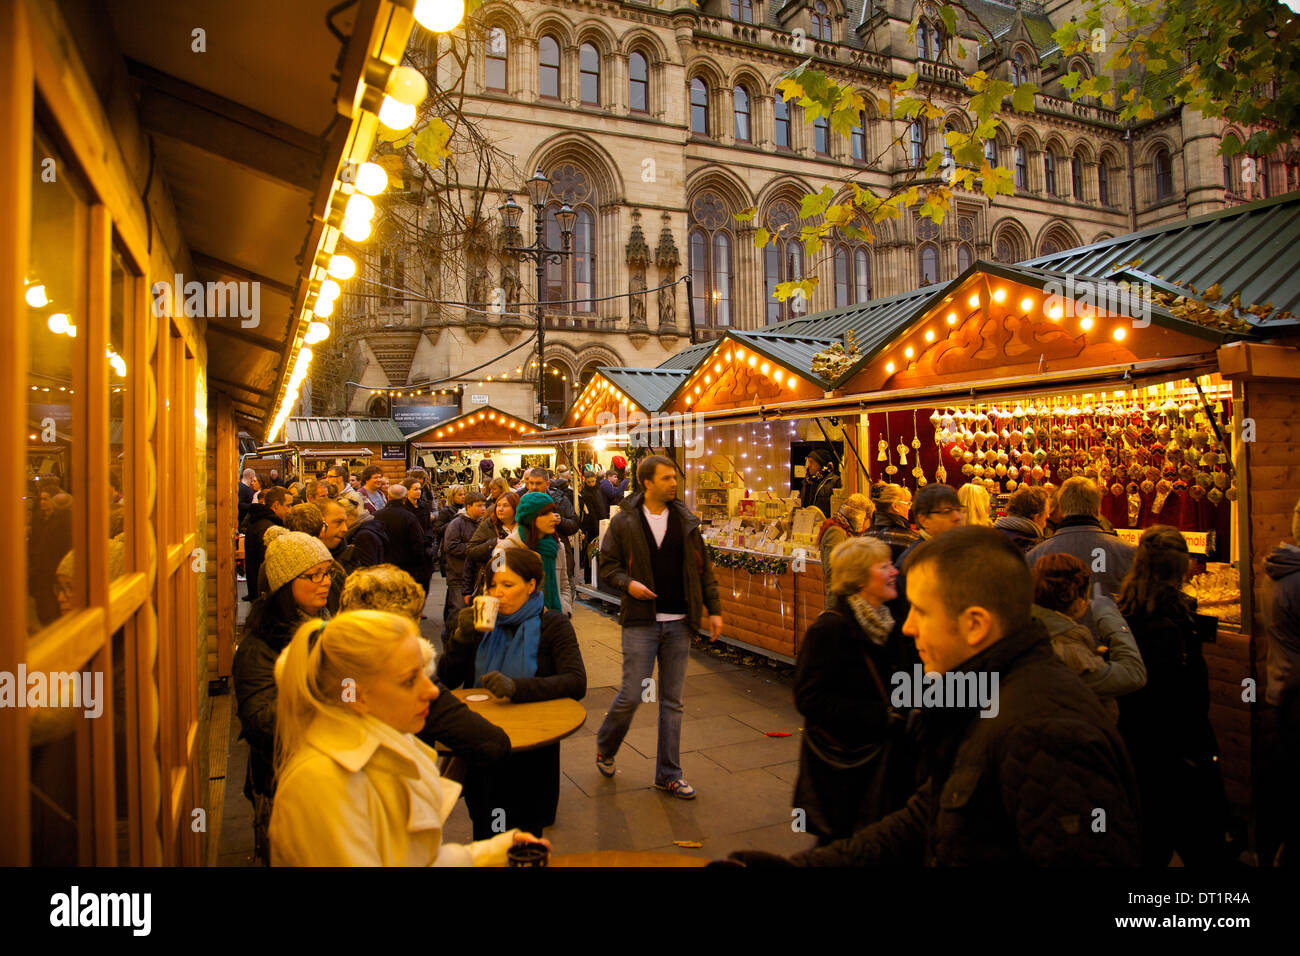 Marché de Noël, Albert Square, Manchester, Angleterre, Royaume-Uni, Europe Banque D'Images